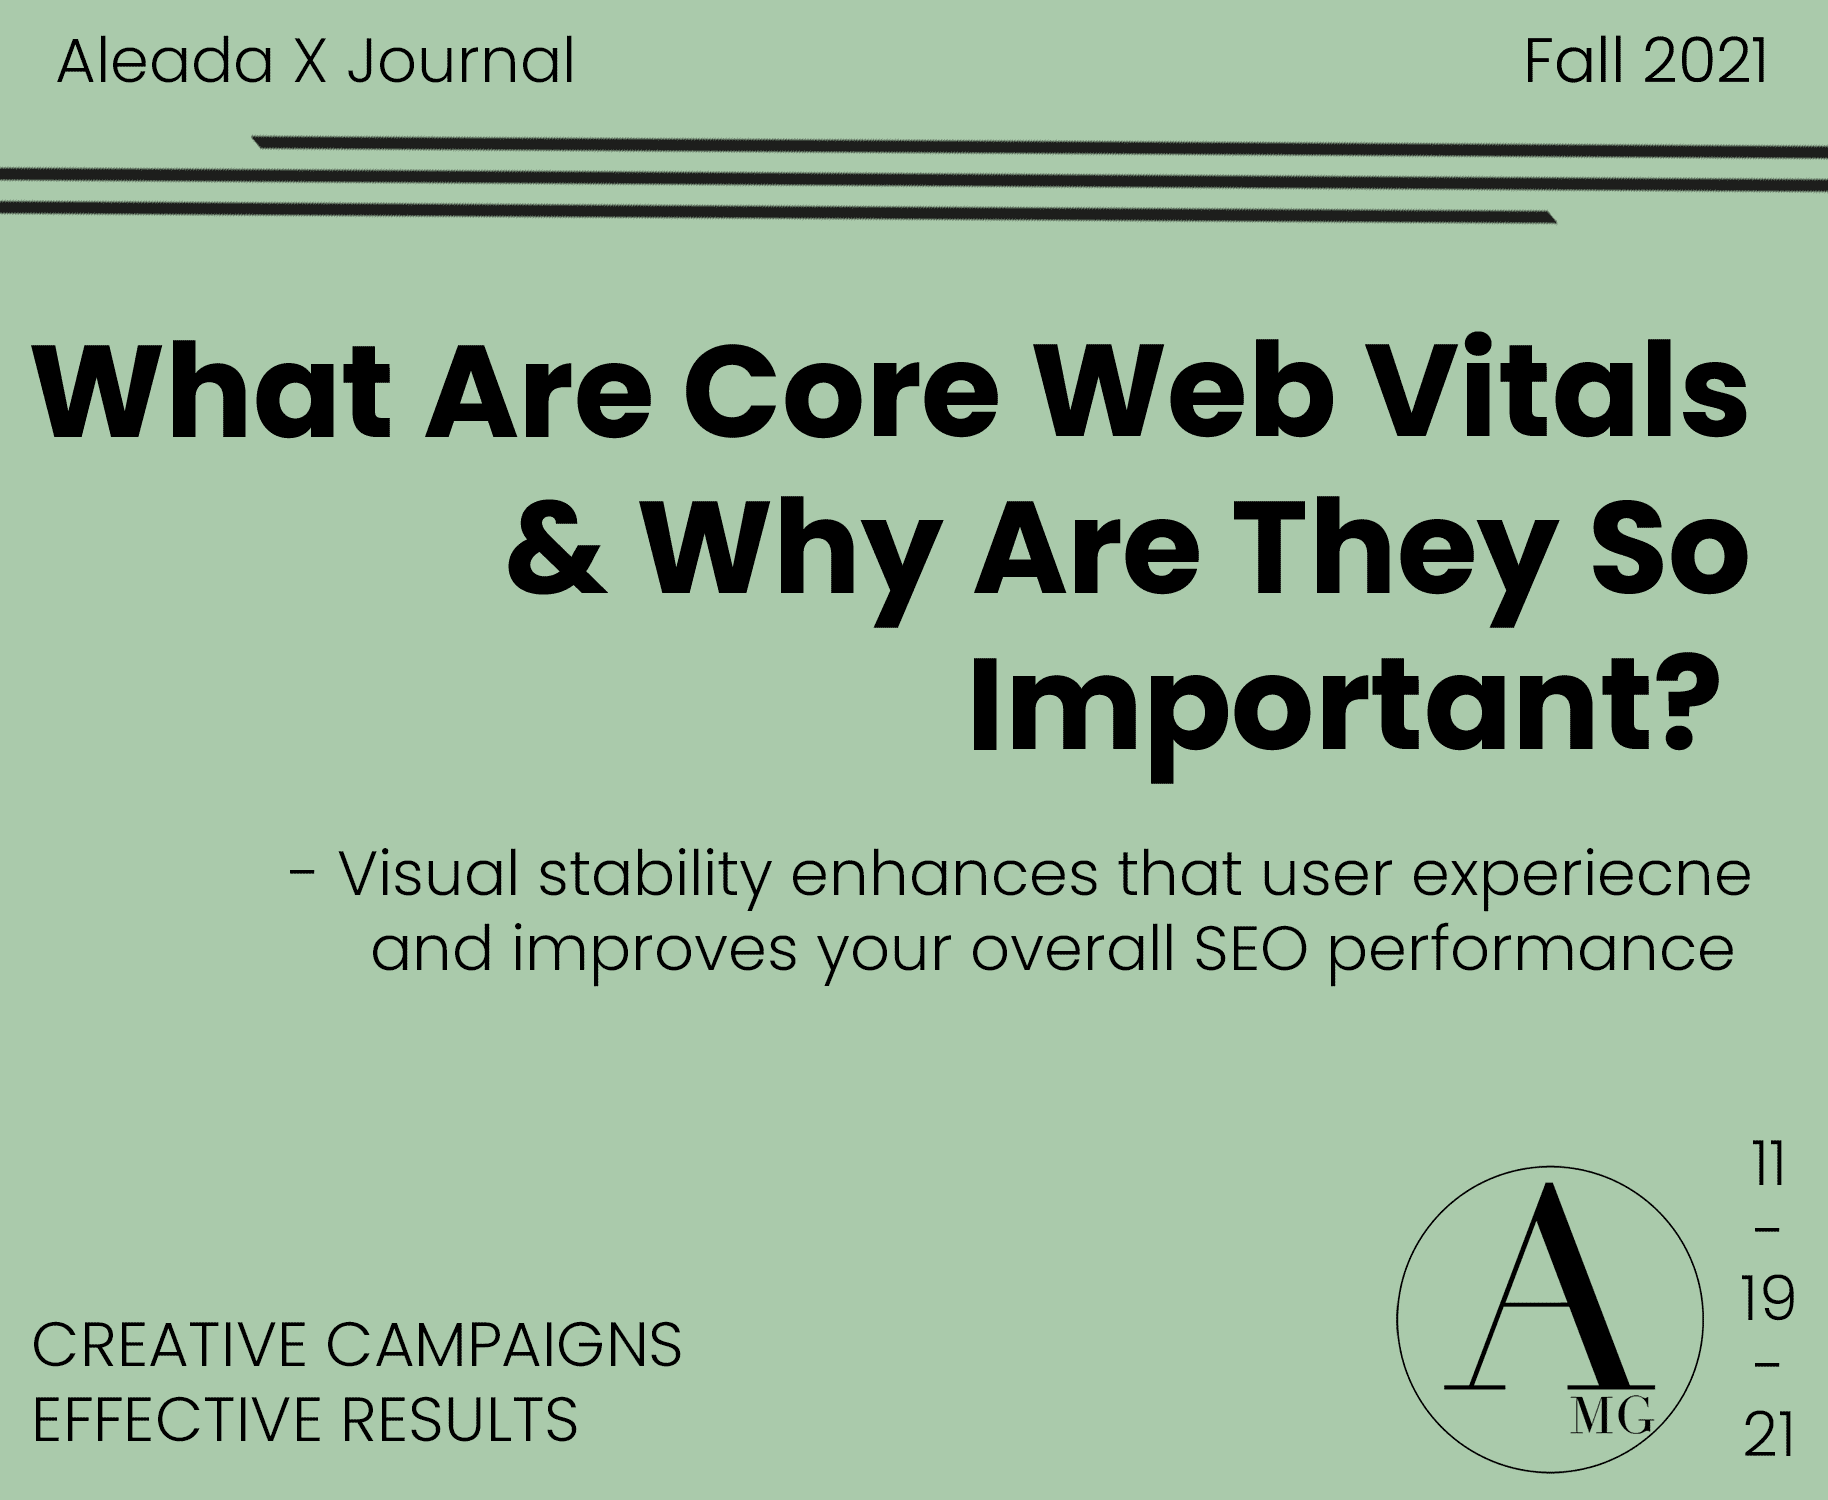 google-core-web-vitals